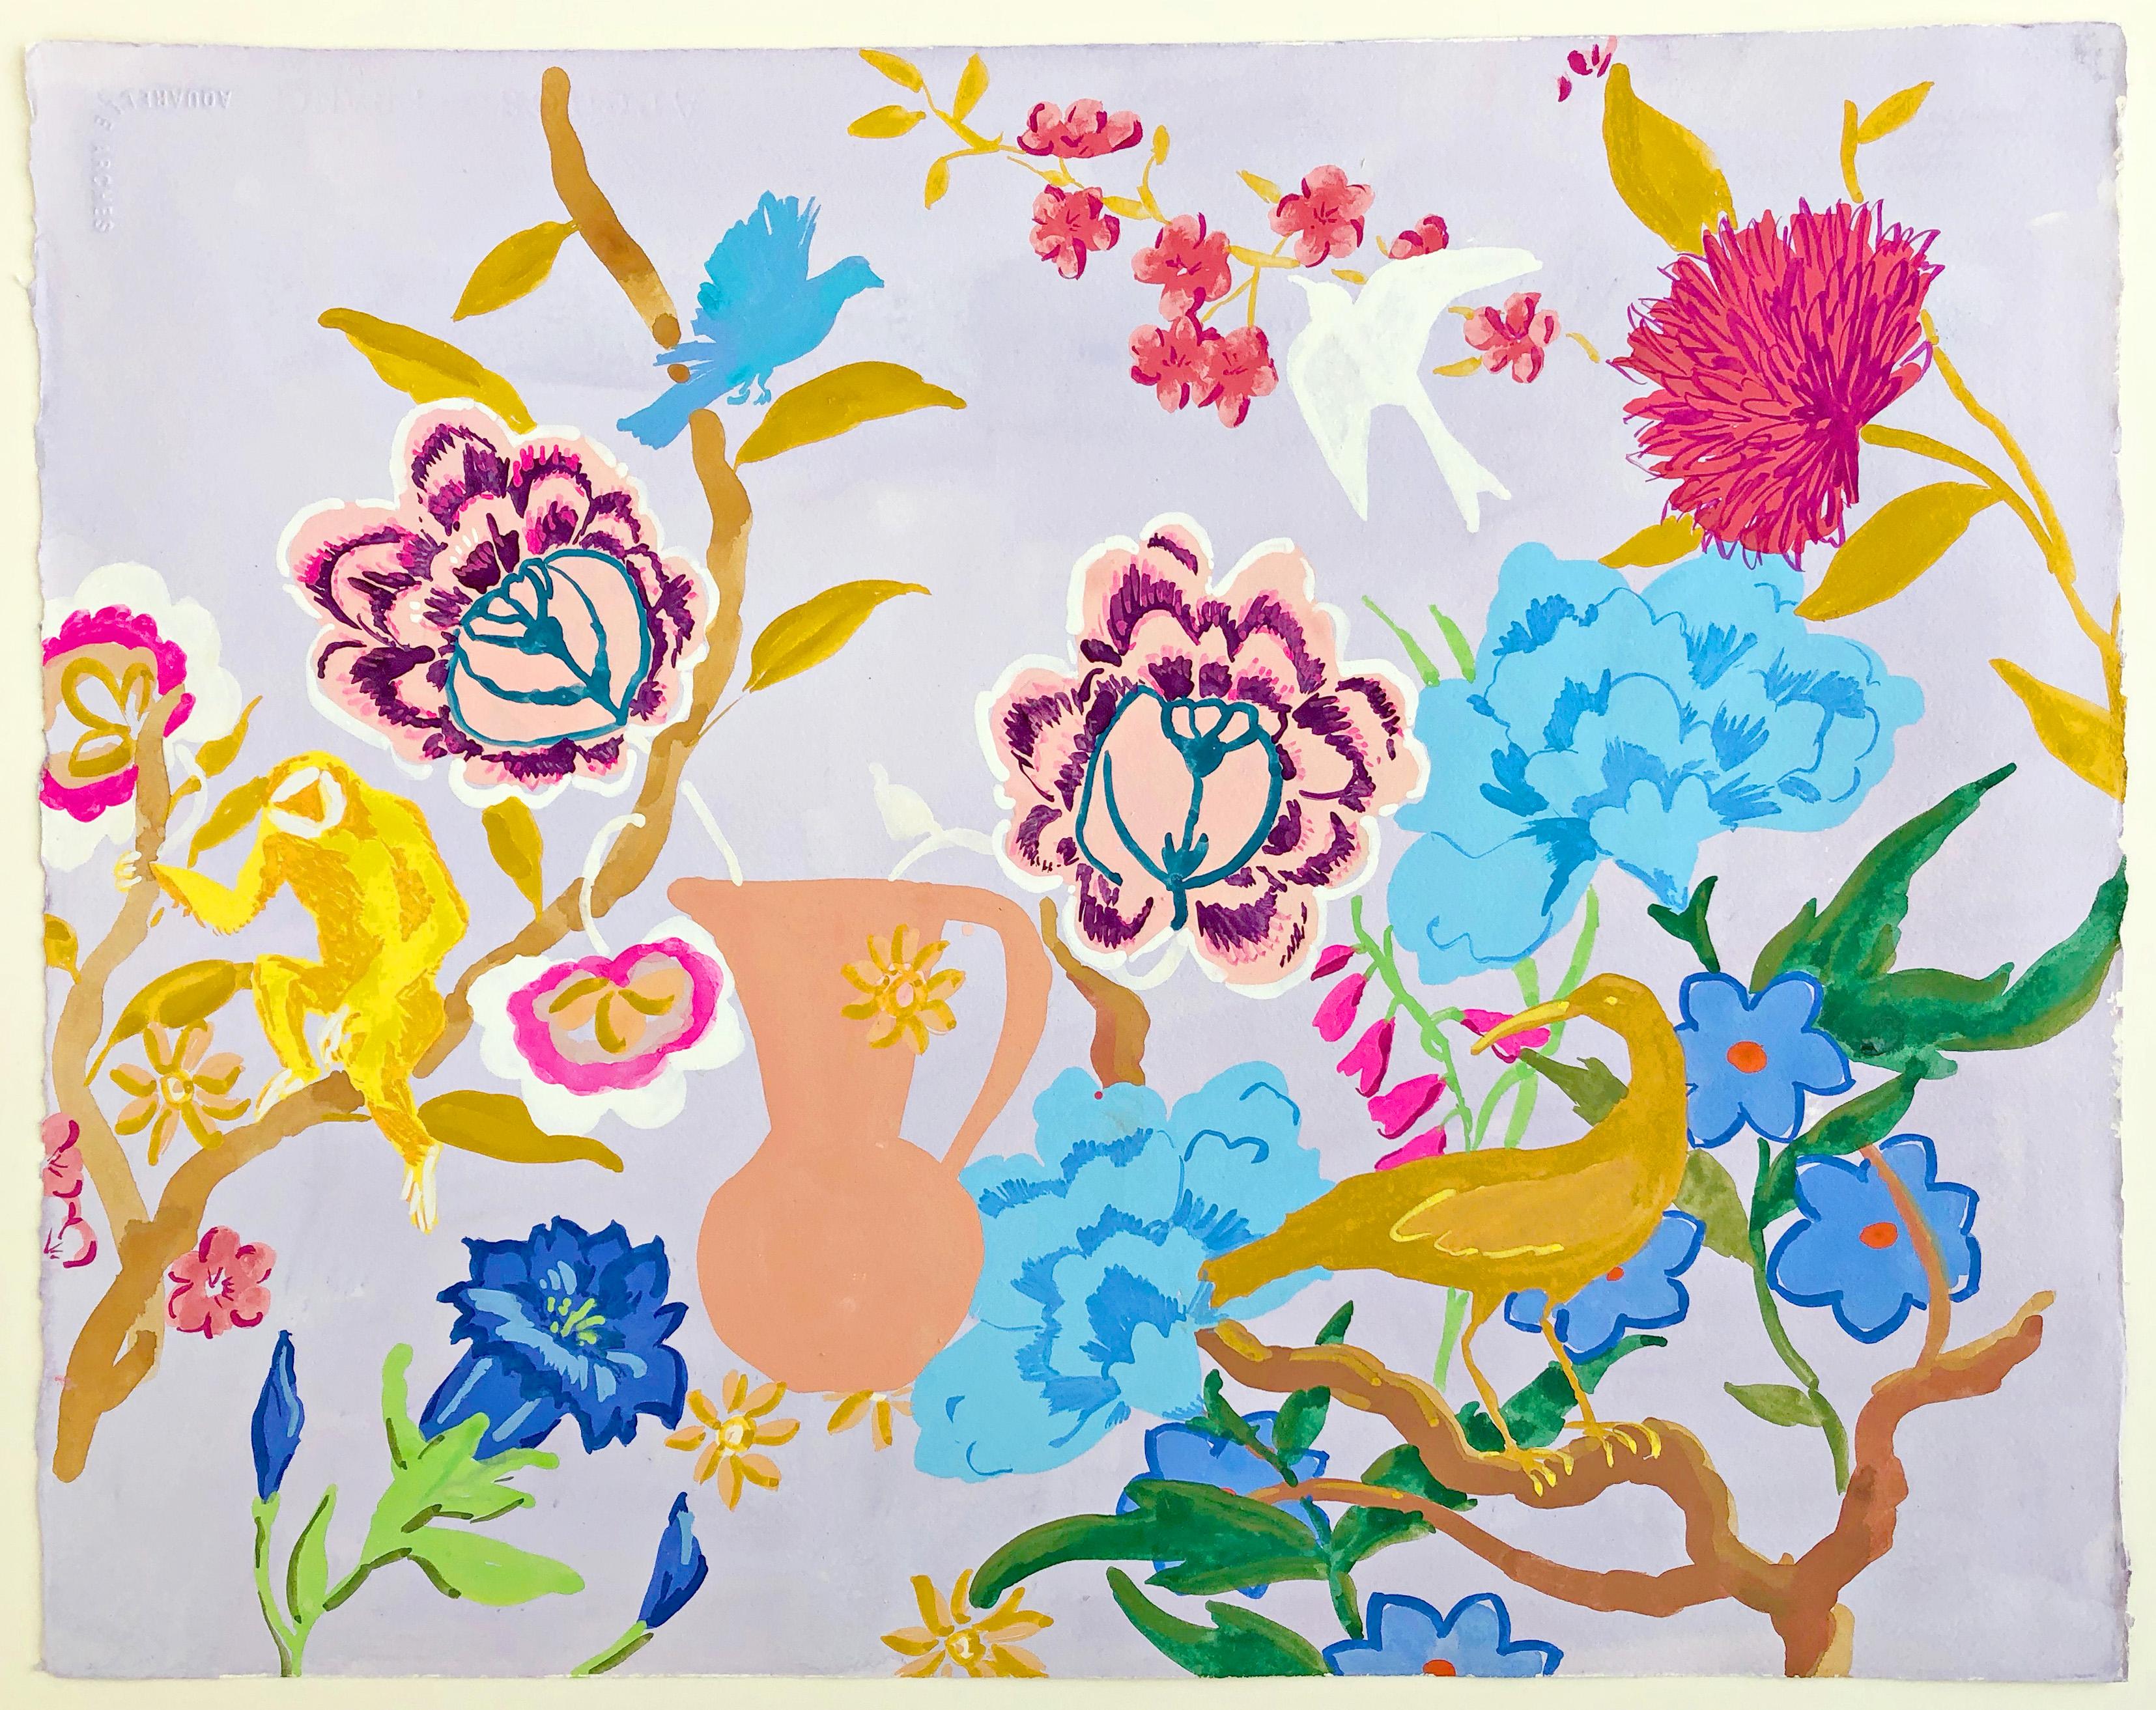 Melanie Parke Landscape Painting – Blau Bernstein, Gelb, Rosa, Botanische Malerei, Blumen, Vögel, Affe, Garten